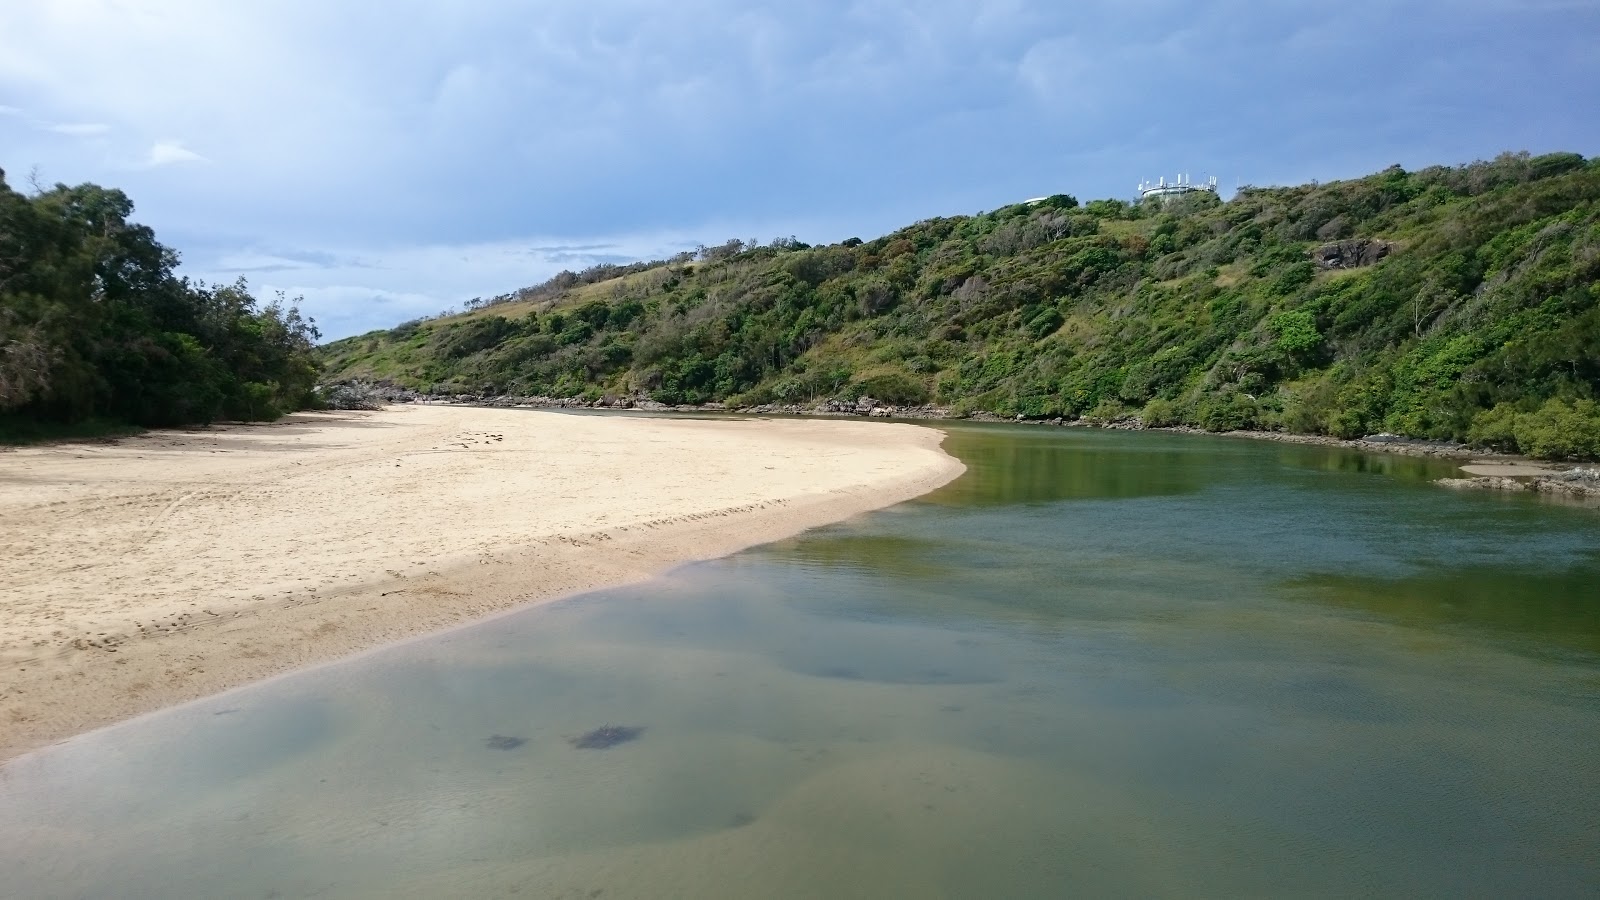 Foto di Boambee Beach ubicato in zona naturale